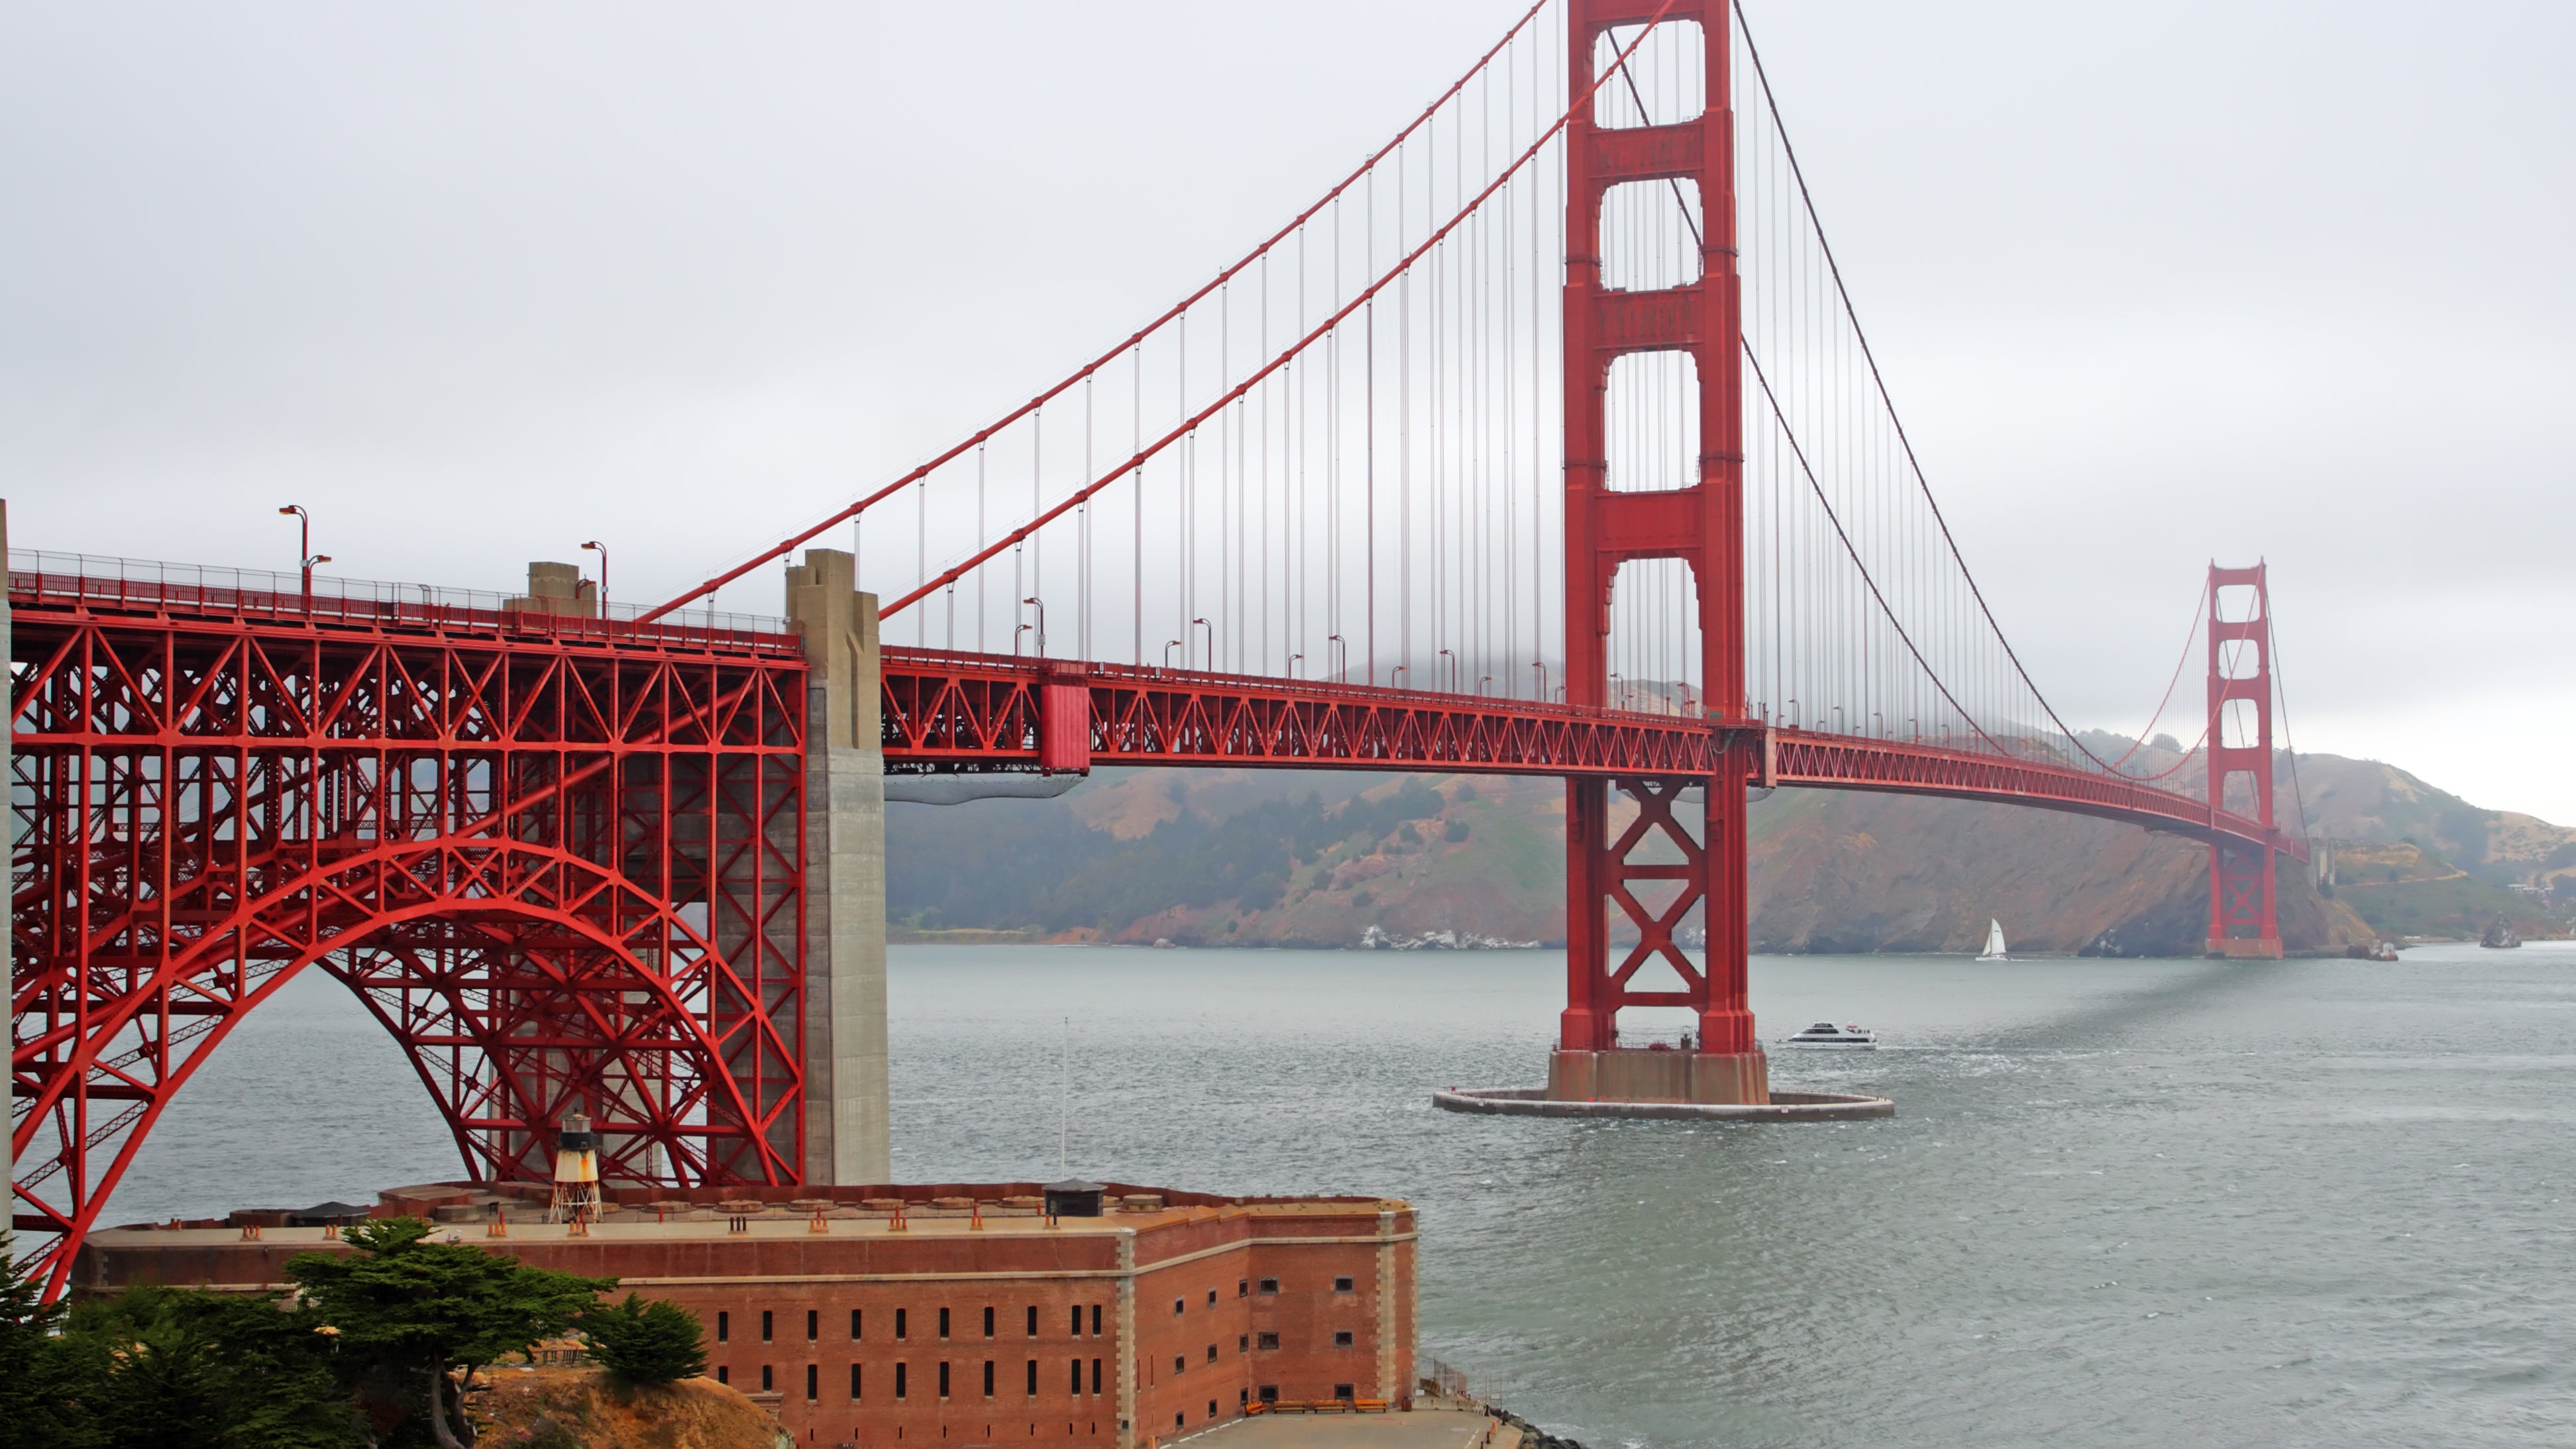 The Golden Gate Bridge of San Francisco, California, USA